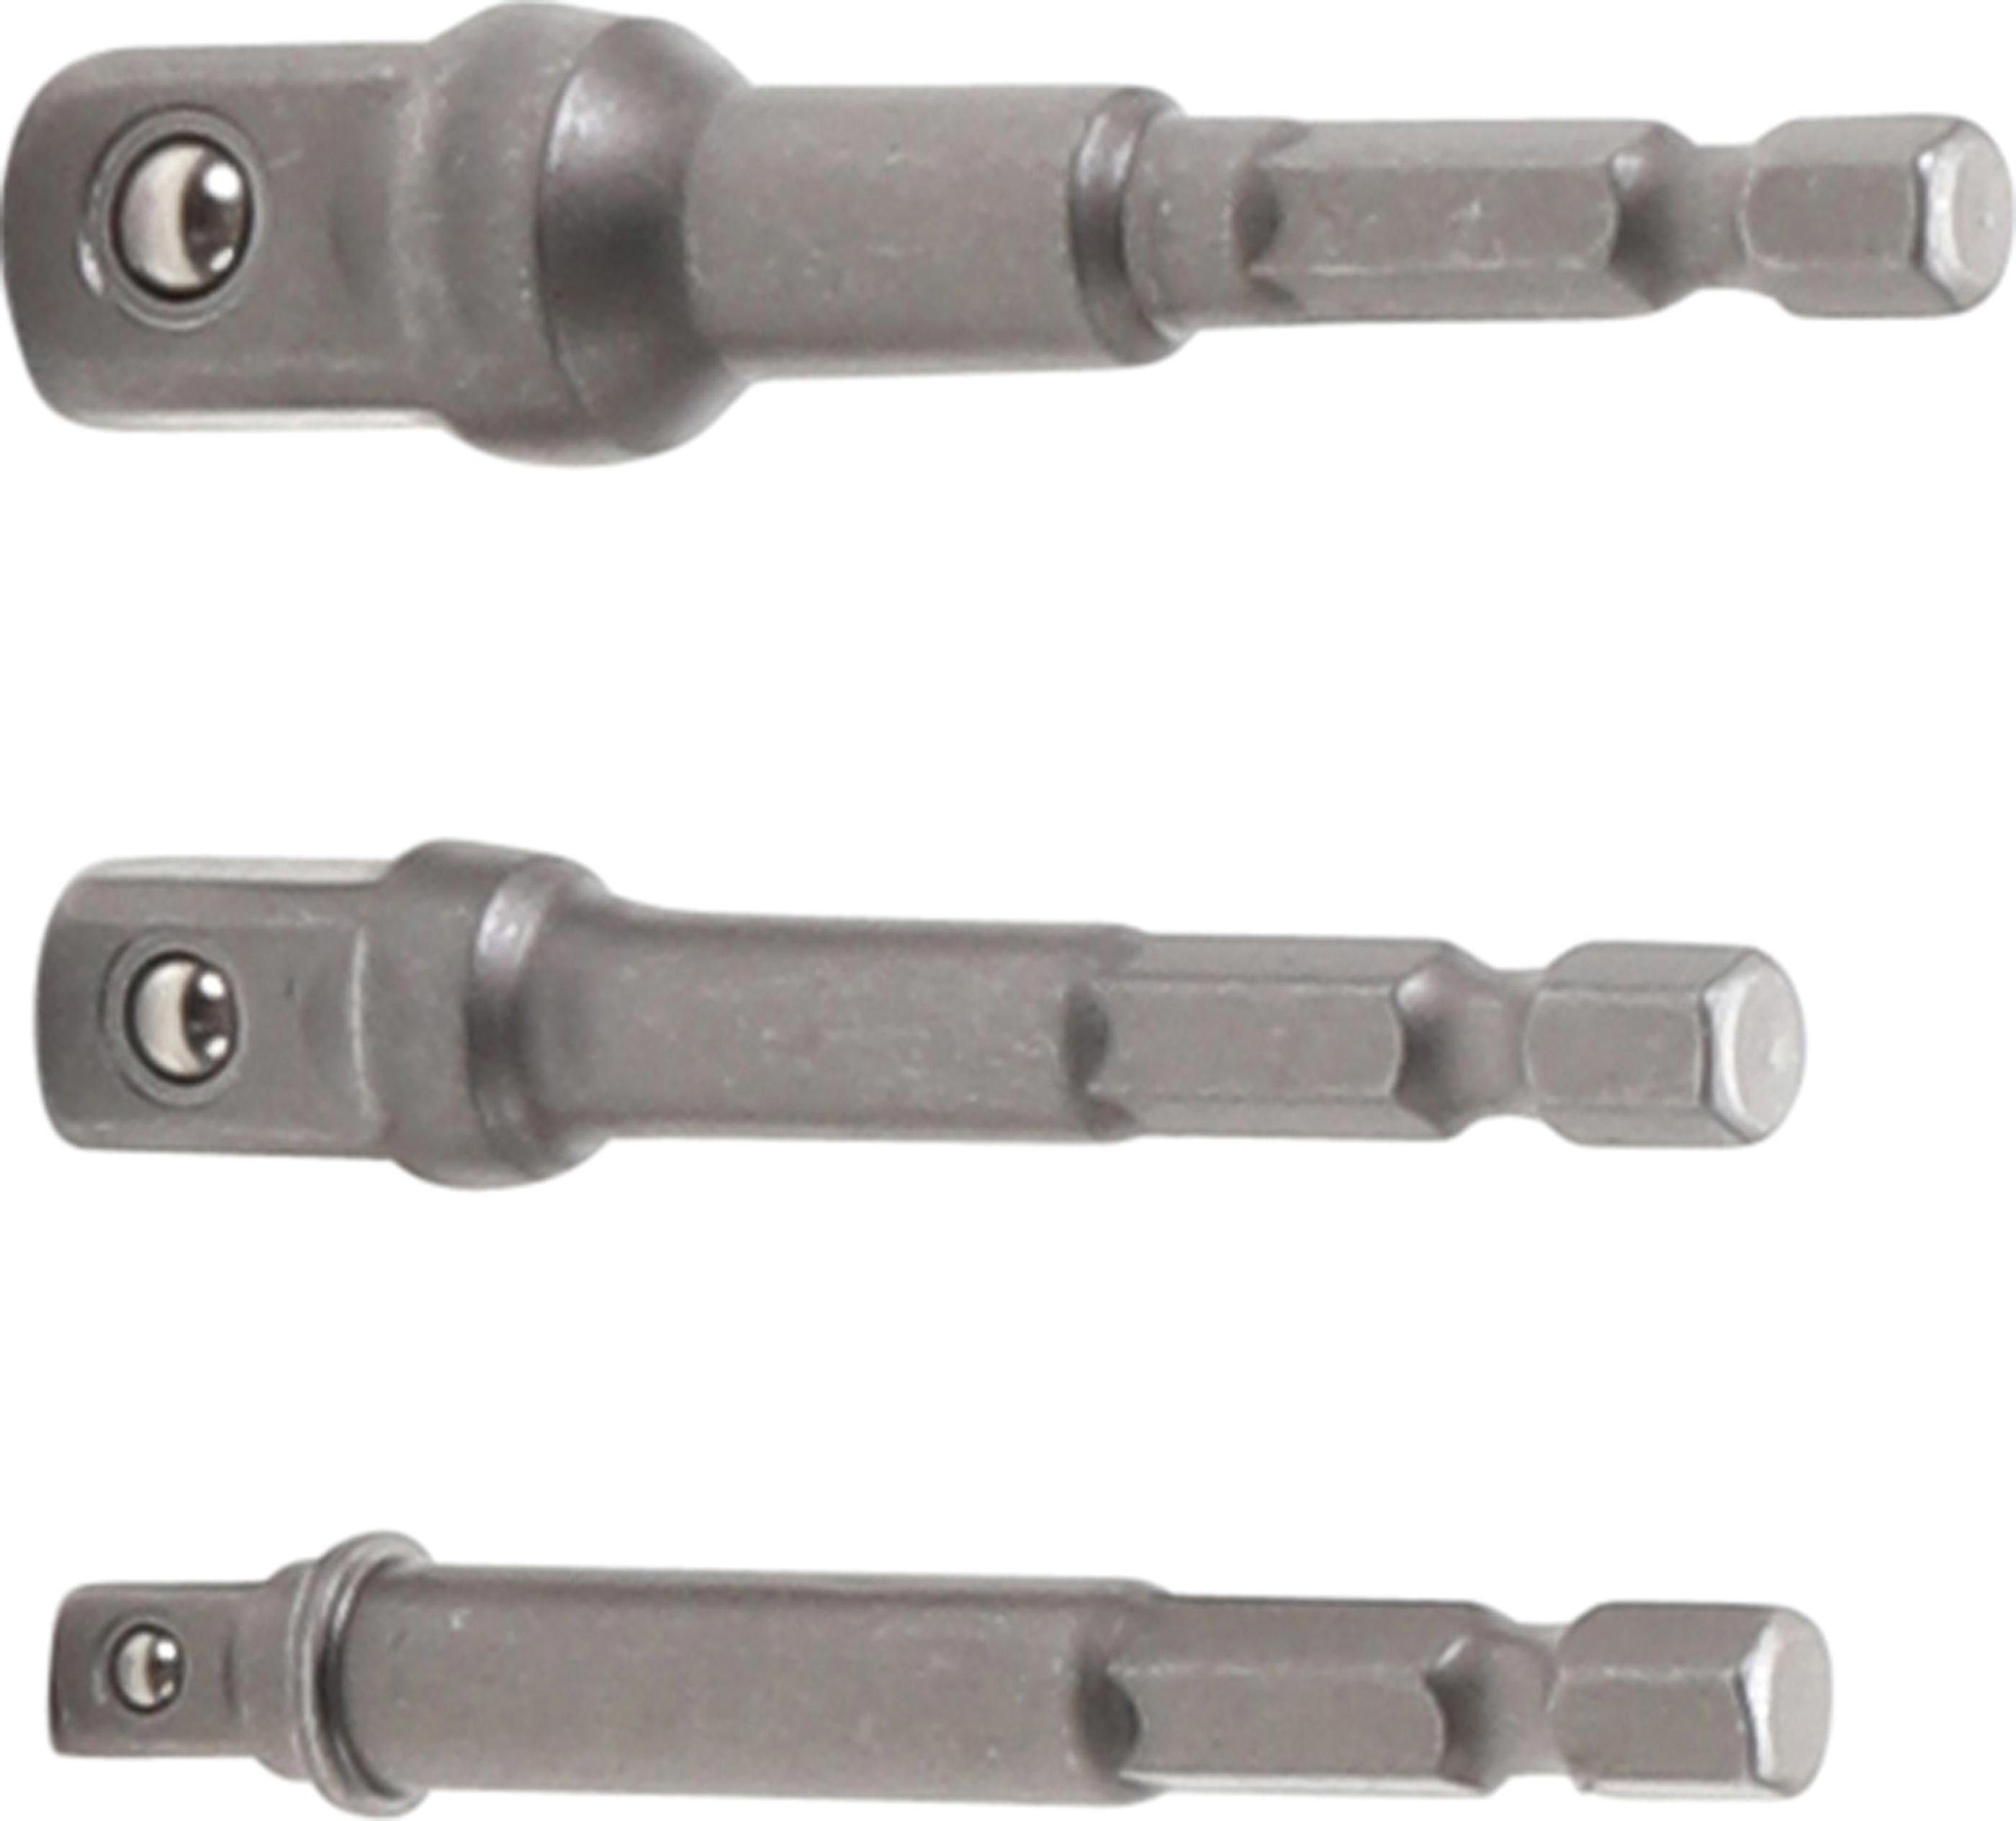 BGS technic Ratschenringschlüssel Adapter-Satz für Bohrmaschinen, Außensechskant Antrieb 6,3 mm (1/4), Abtrieb Außenvierkant 6,3 mm (1/4), 10 mm (3/8), 12,5 mm (1/2), 3-tlg.